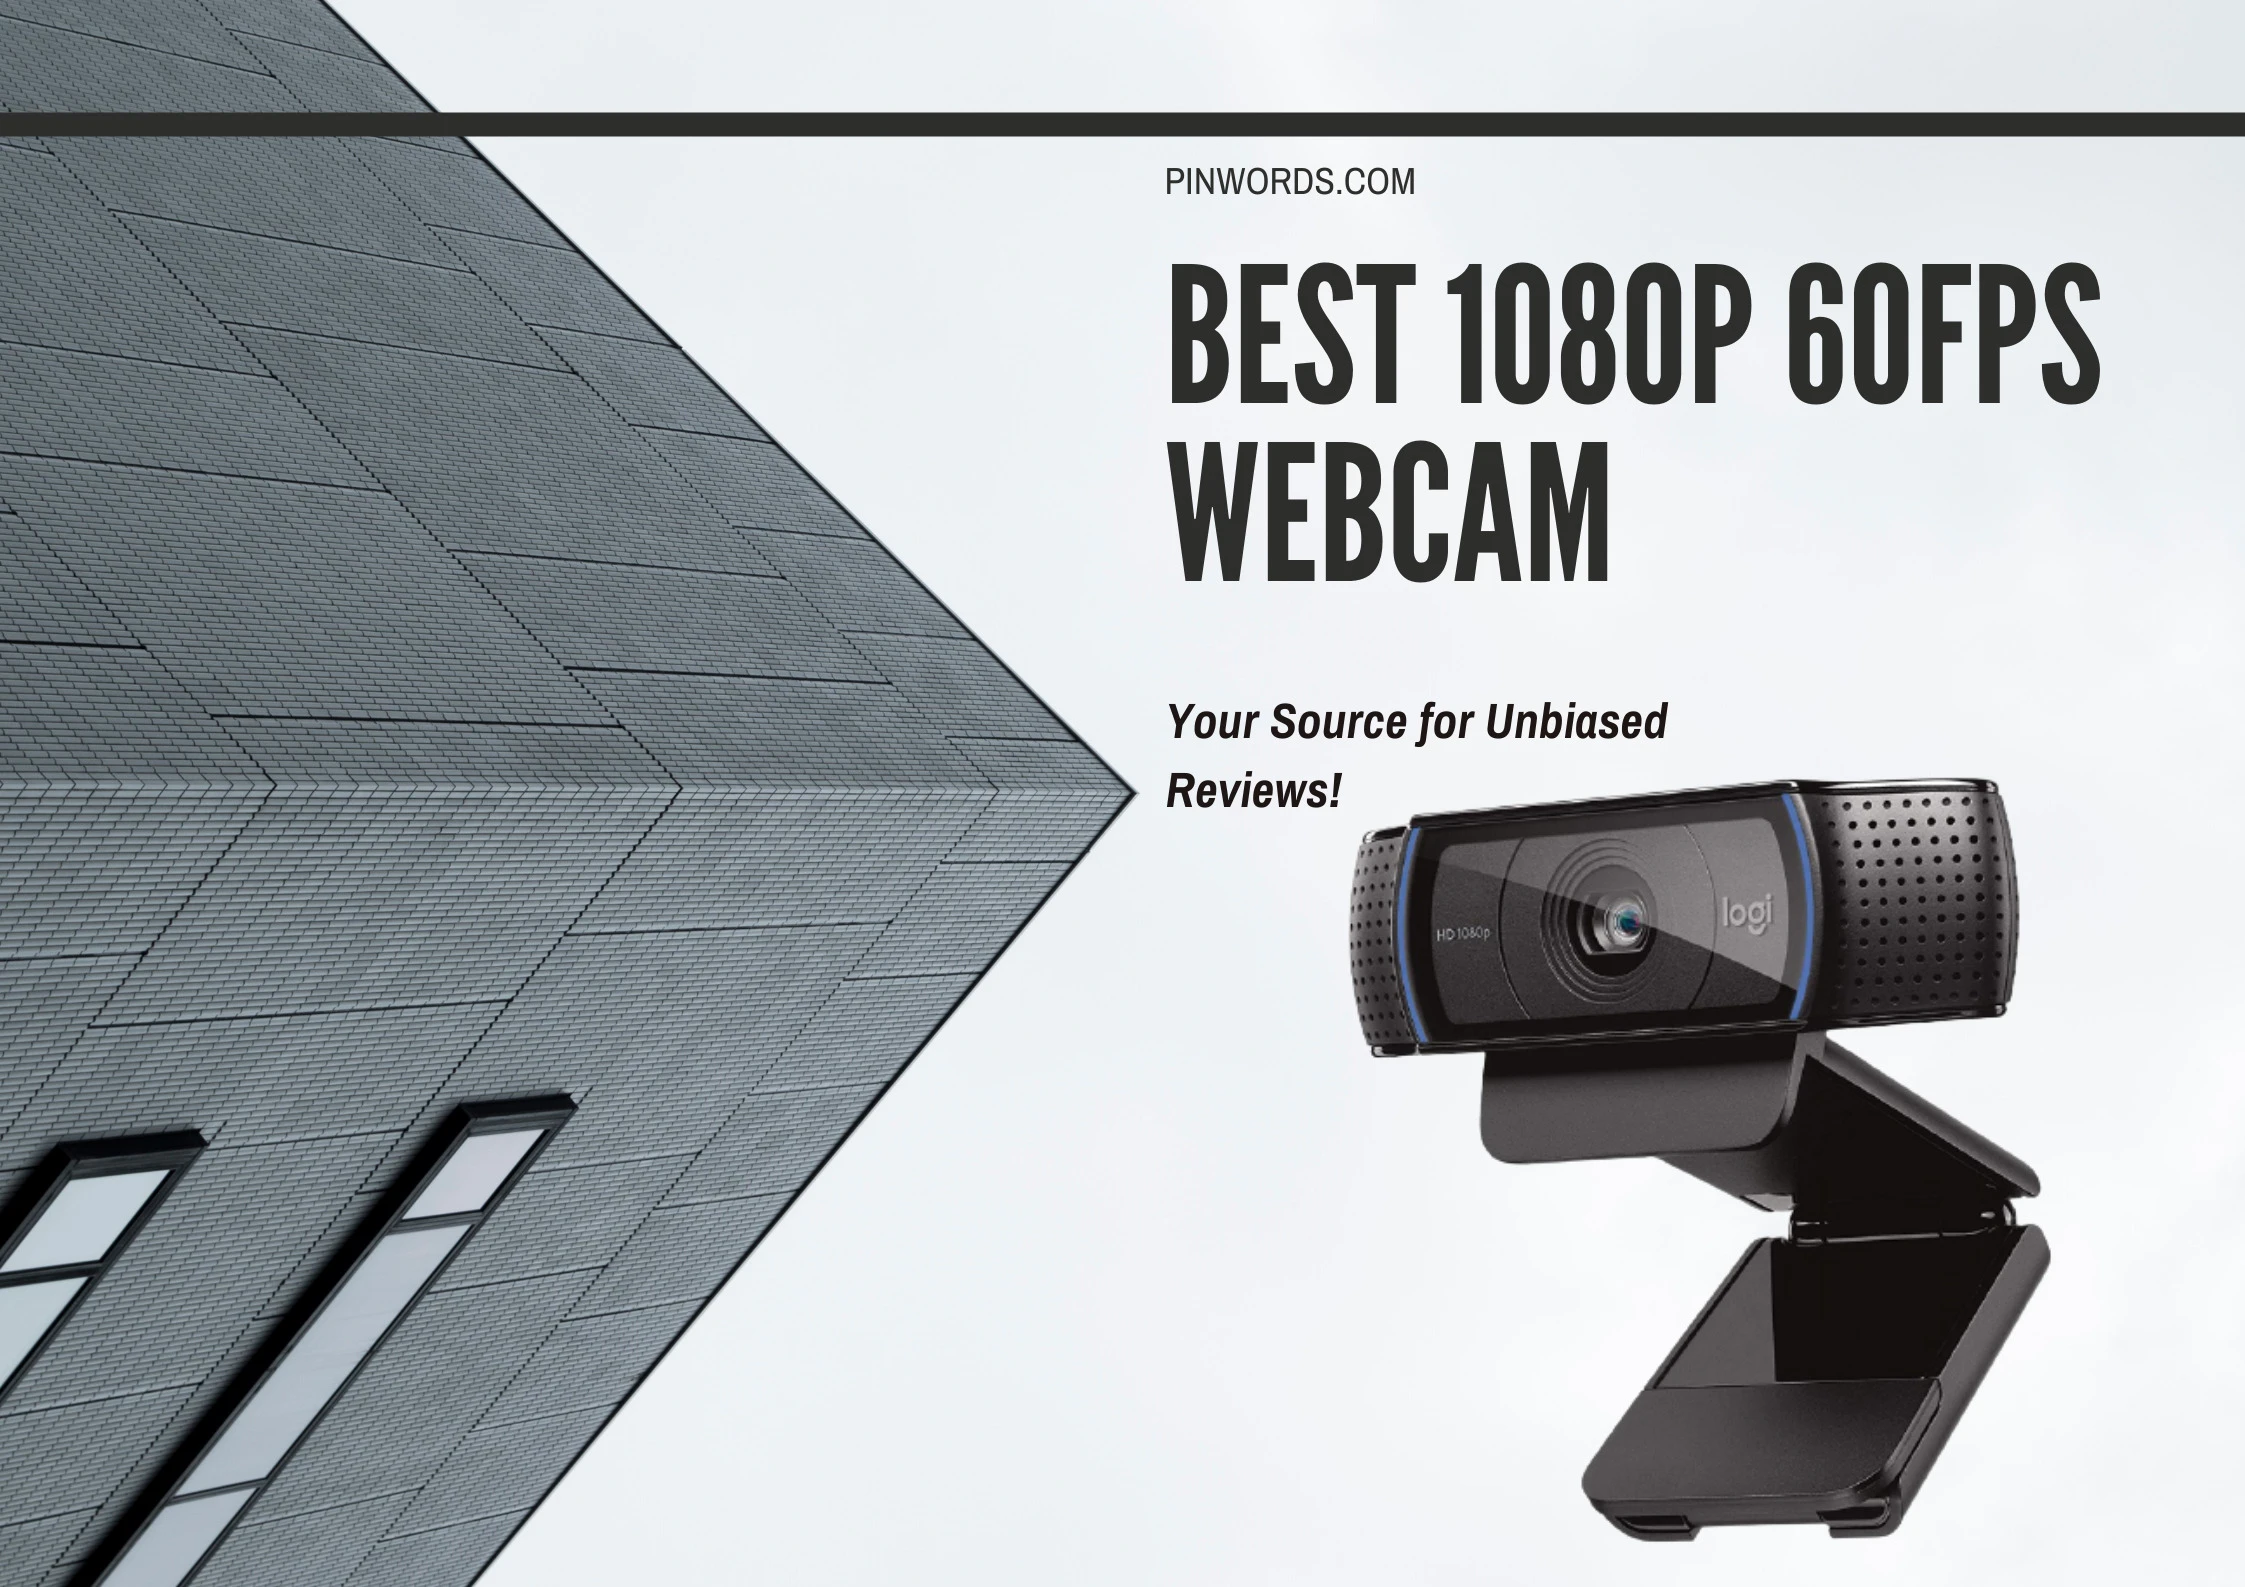  Best 1080p 60fps Webcams Reviews 